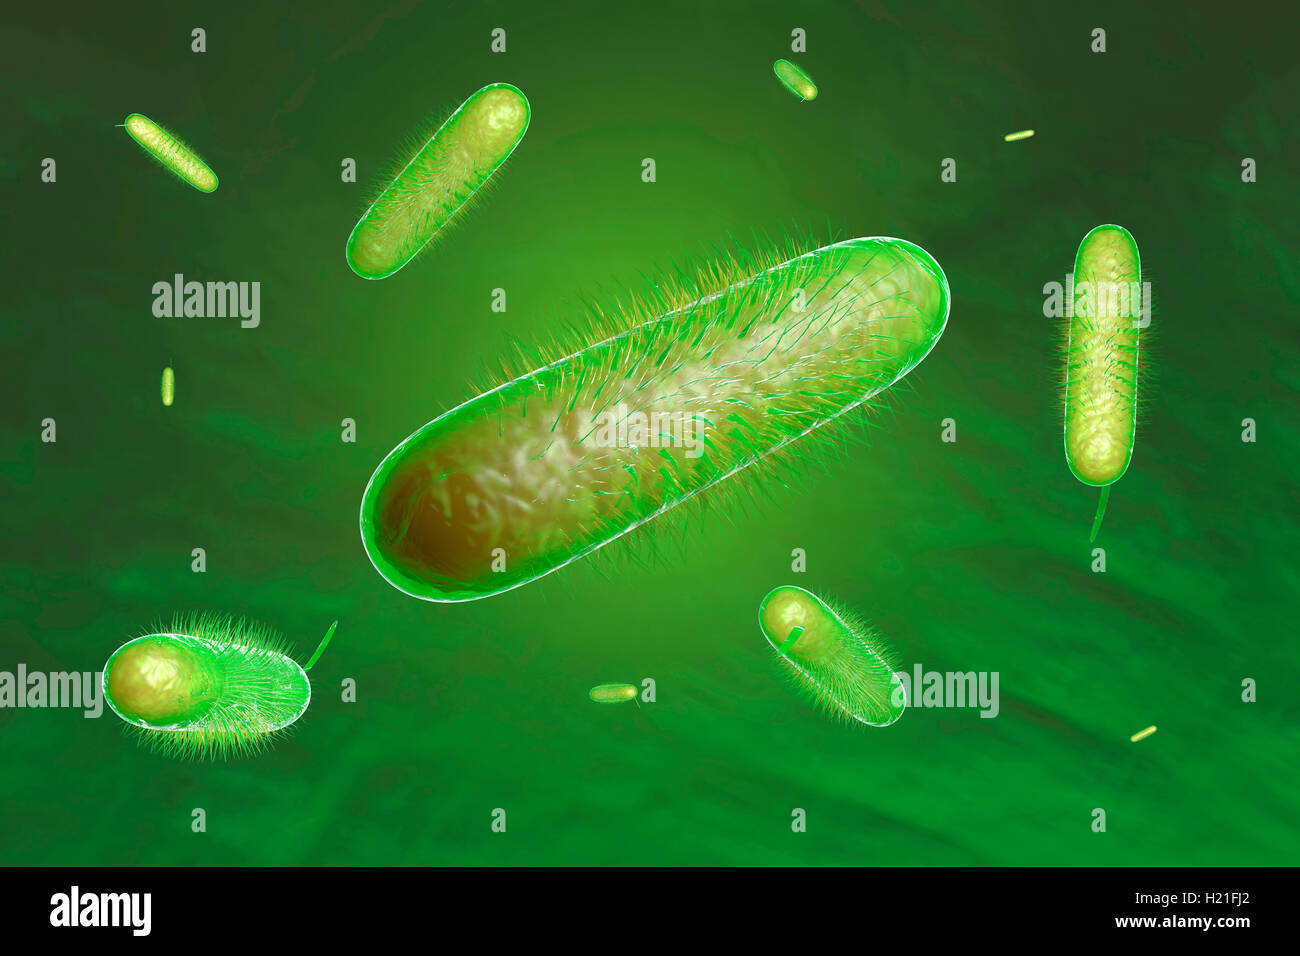 Rendu 3D illustration de bactéries Banque D'Images